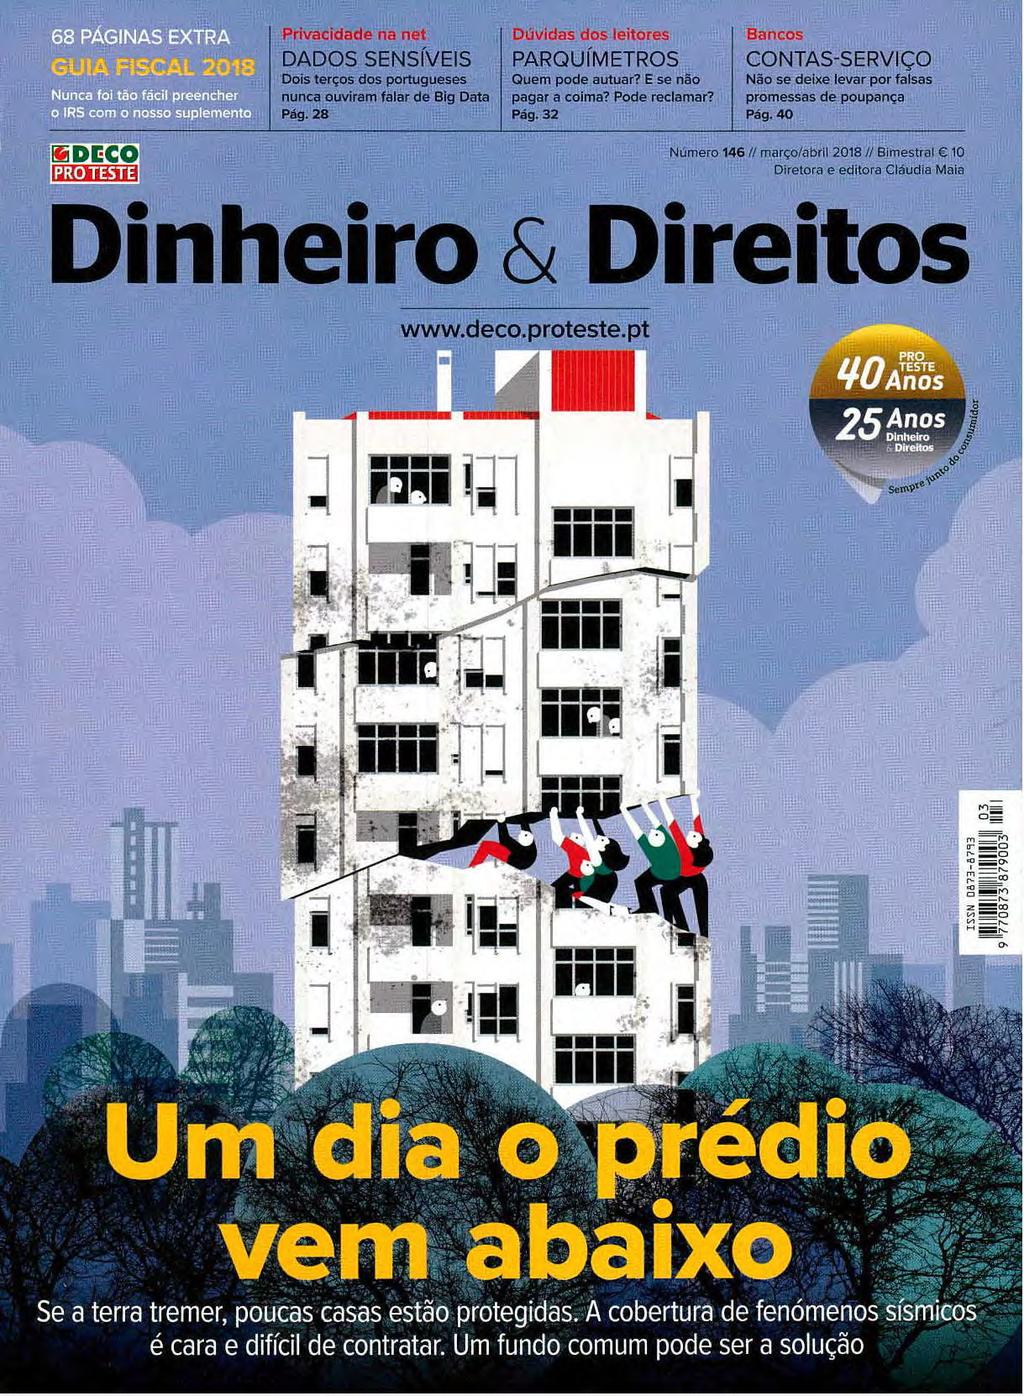 40 Efi DEC PRO TESTE Número 146 // março/abril 2018 // Bimestral 10 Diretora e editora Cláudia Maia heiro & Direitos www.deco.proteste.